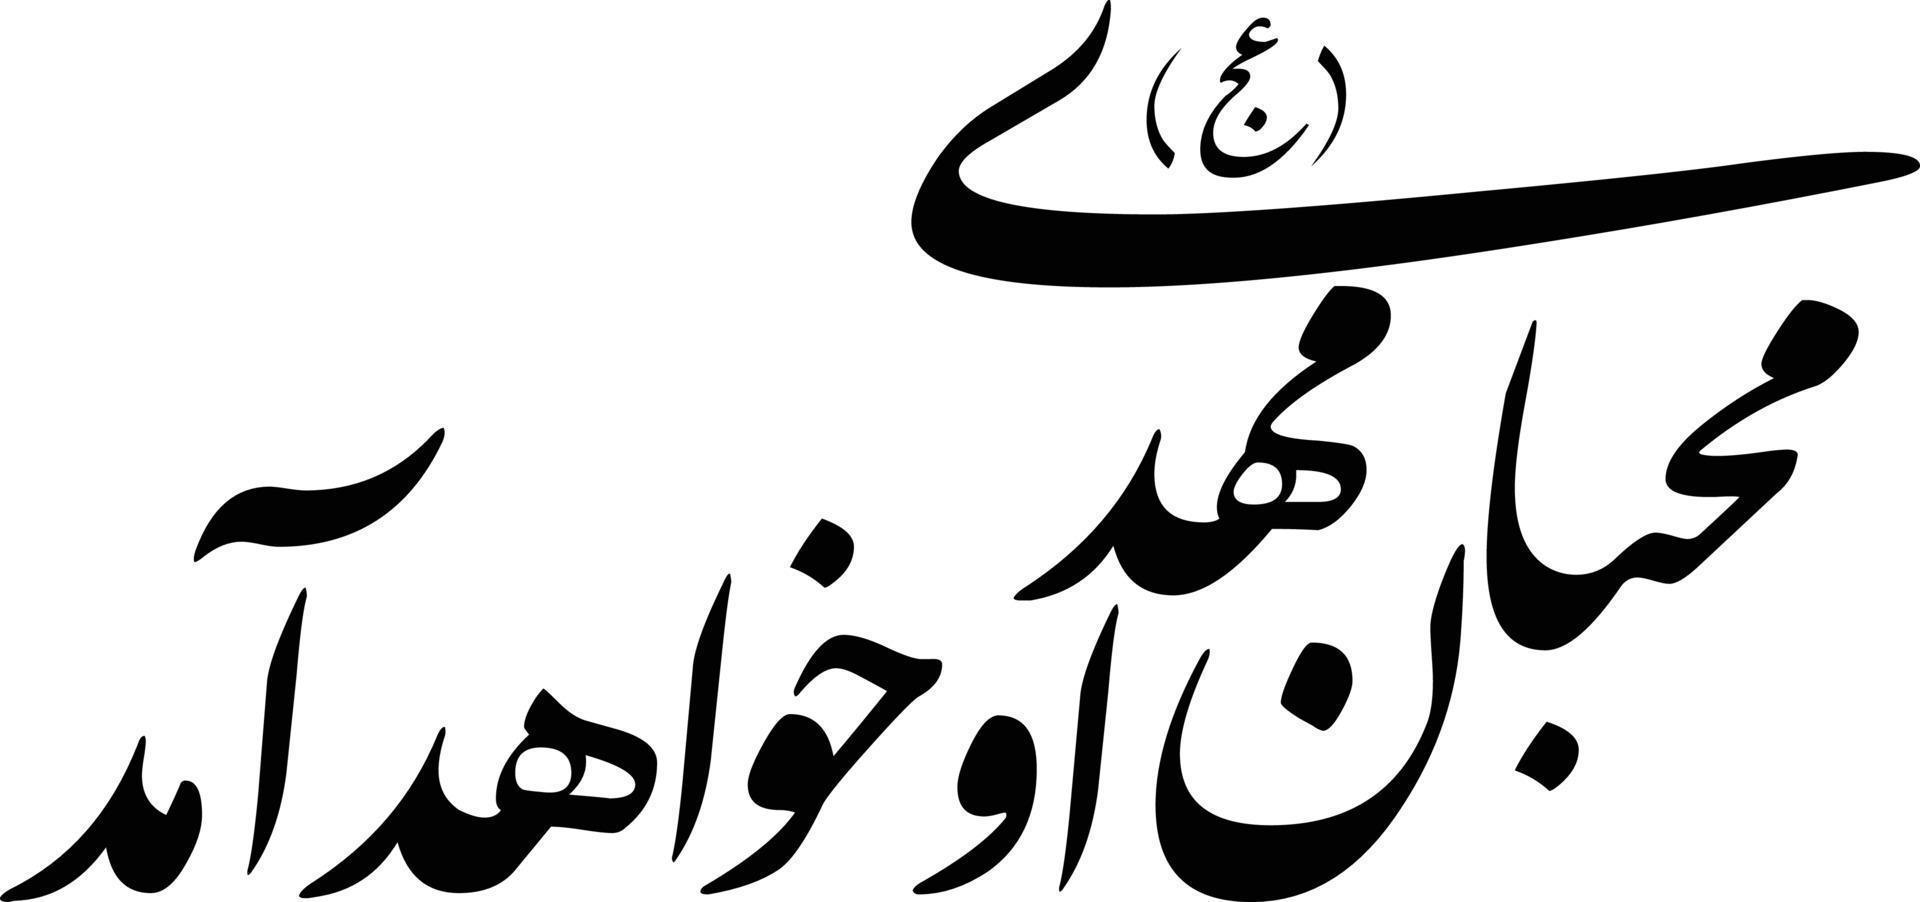 muhiban mahadey titolo islamico urdu Arabo calligrafia gratuito vettore